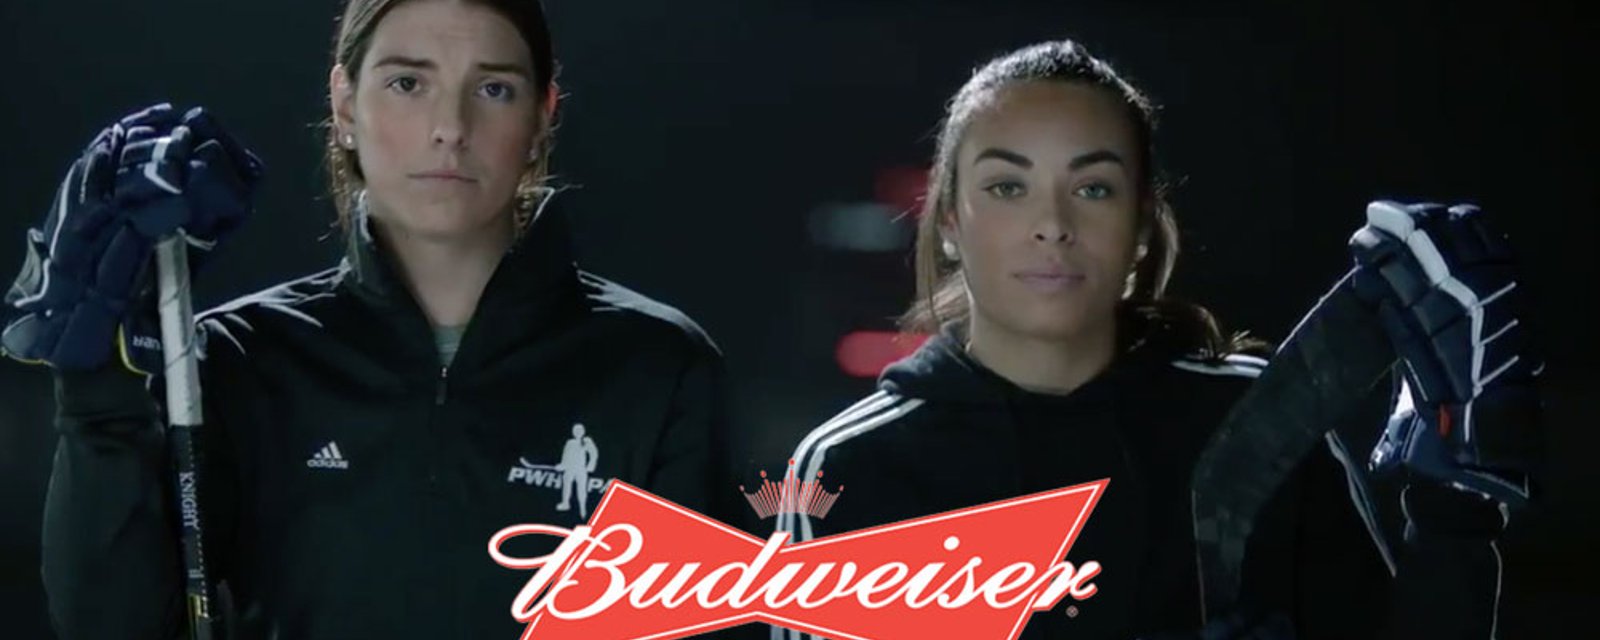 Budweiser steps up to sponsor women’s league